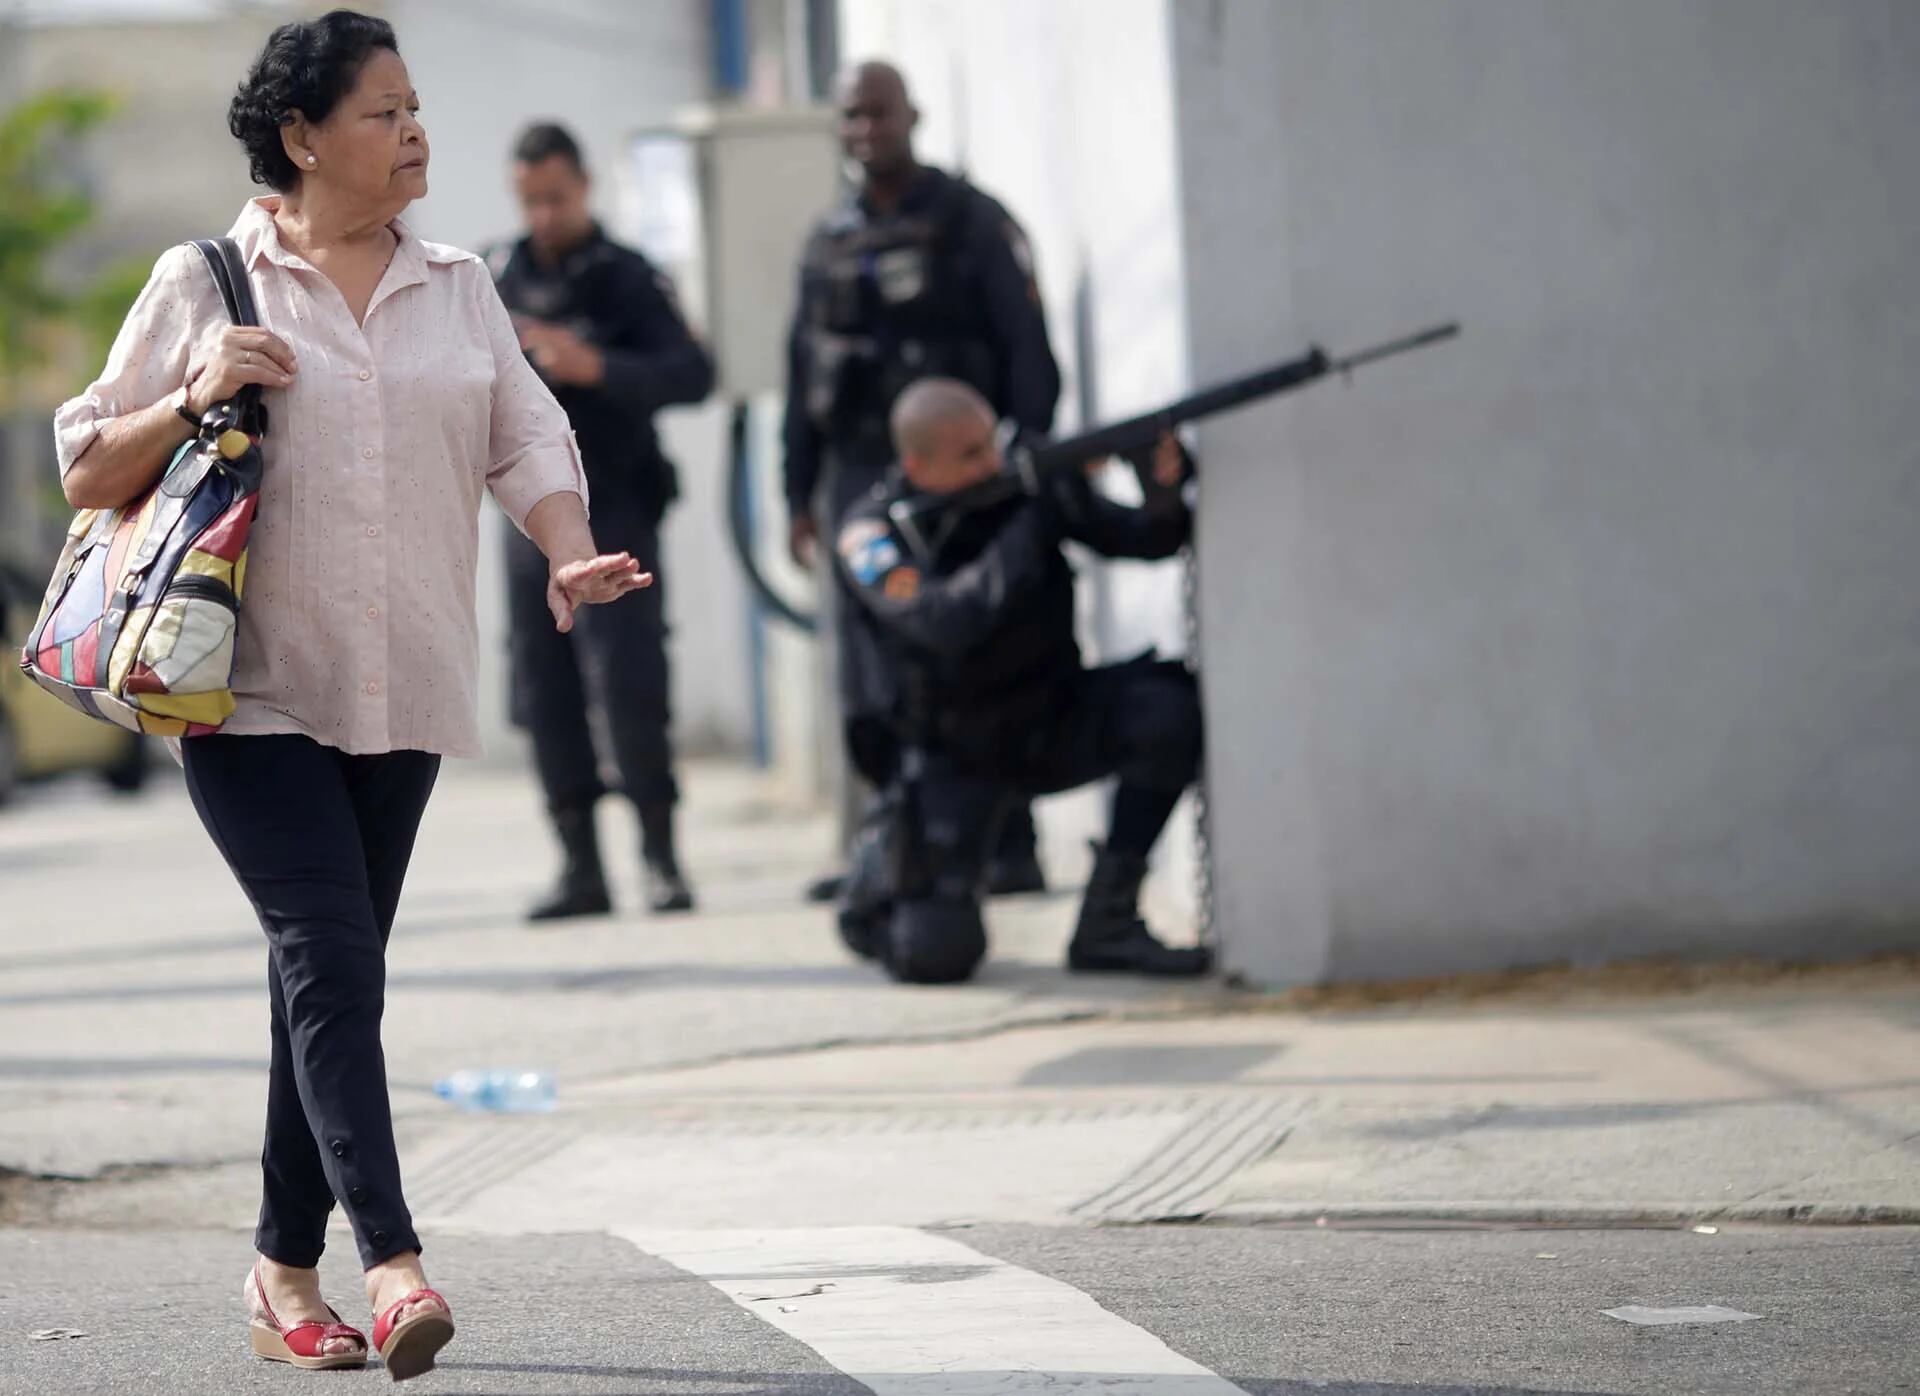 Una mujer camina por las calles mientras la policía ocupa sus posiciones durante un operativo contra el narcotráfico en Río de Janeiro, Brasil